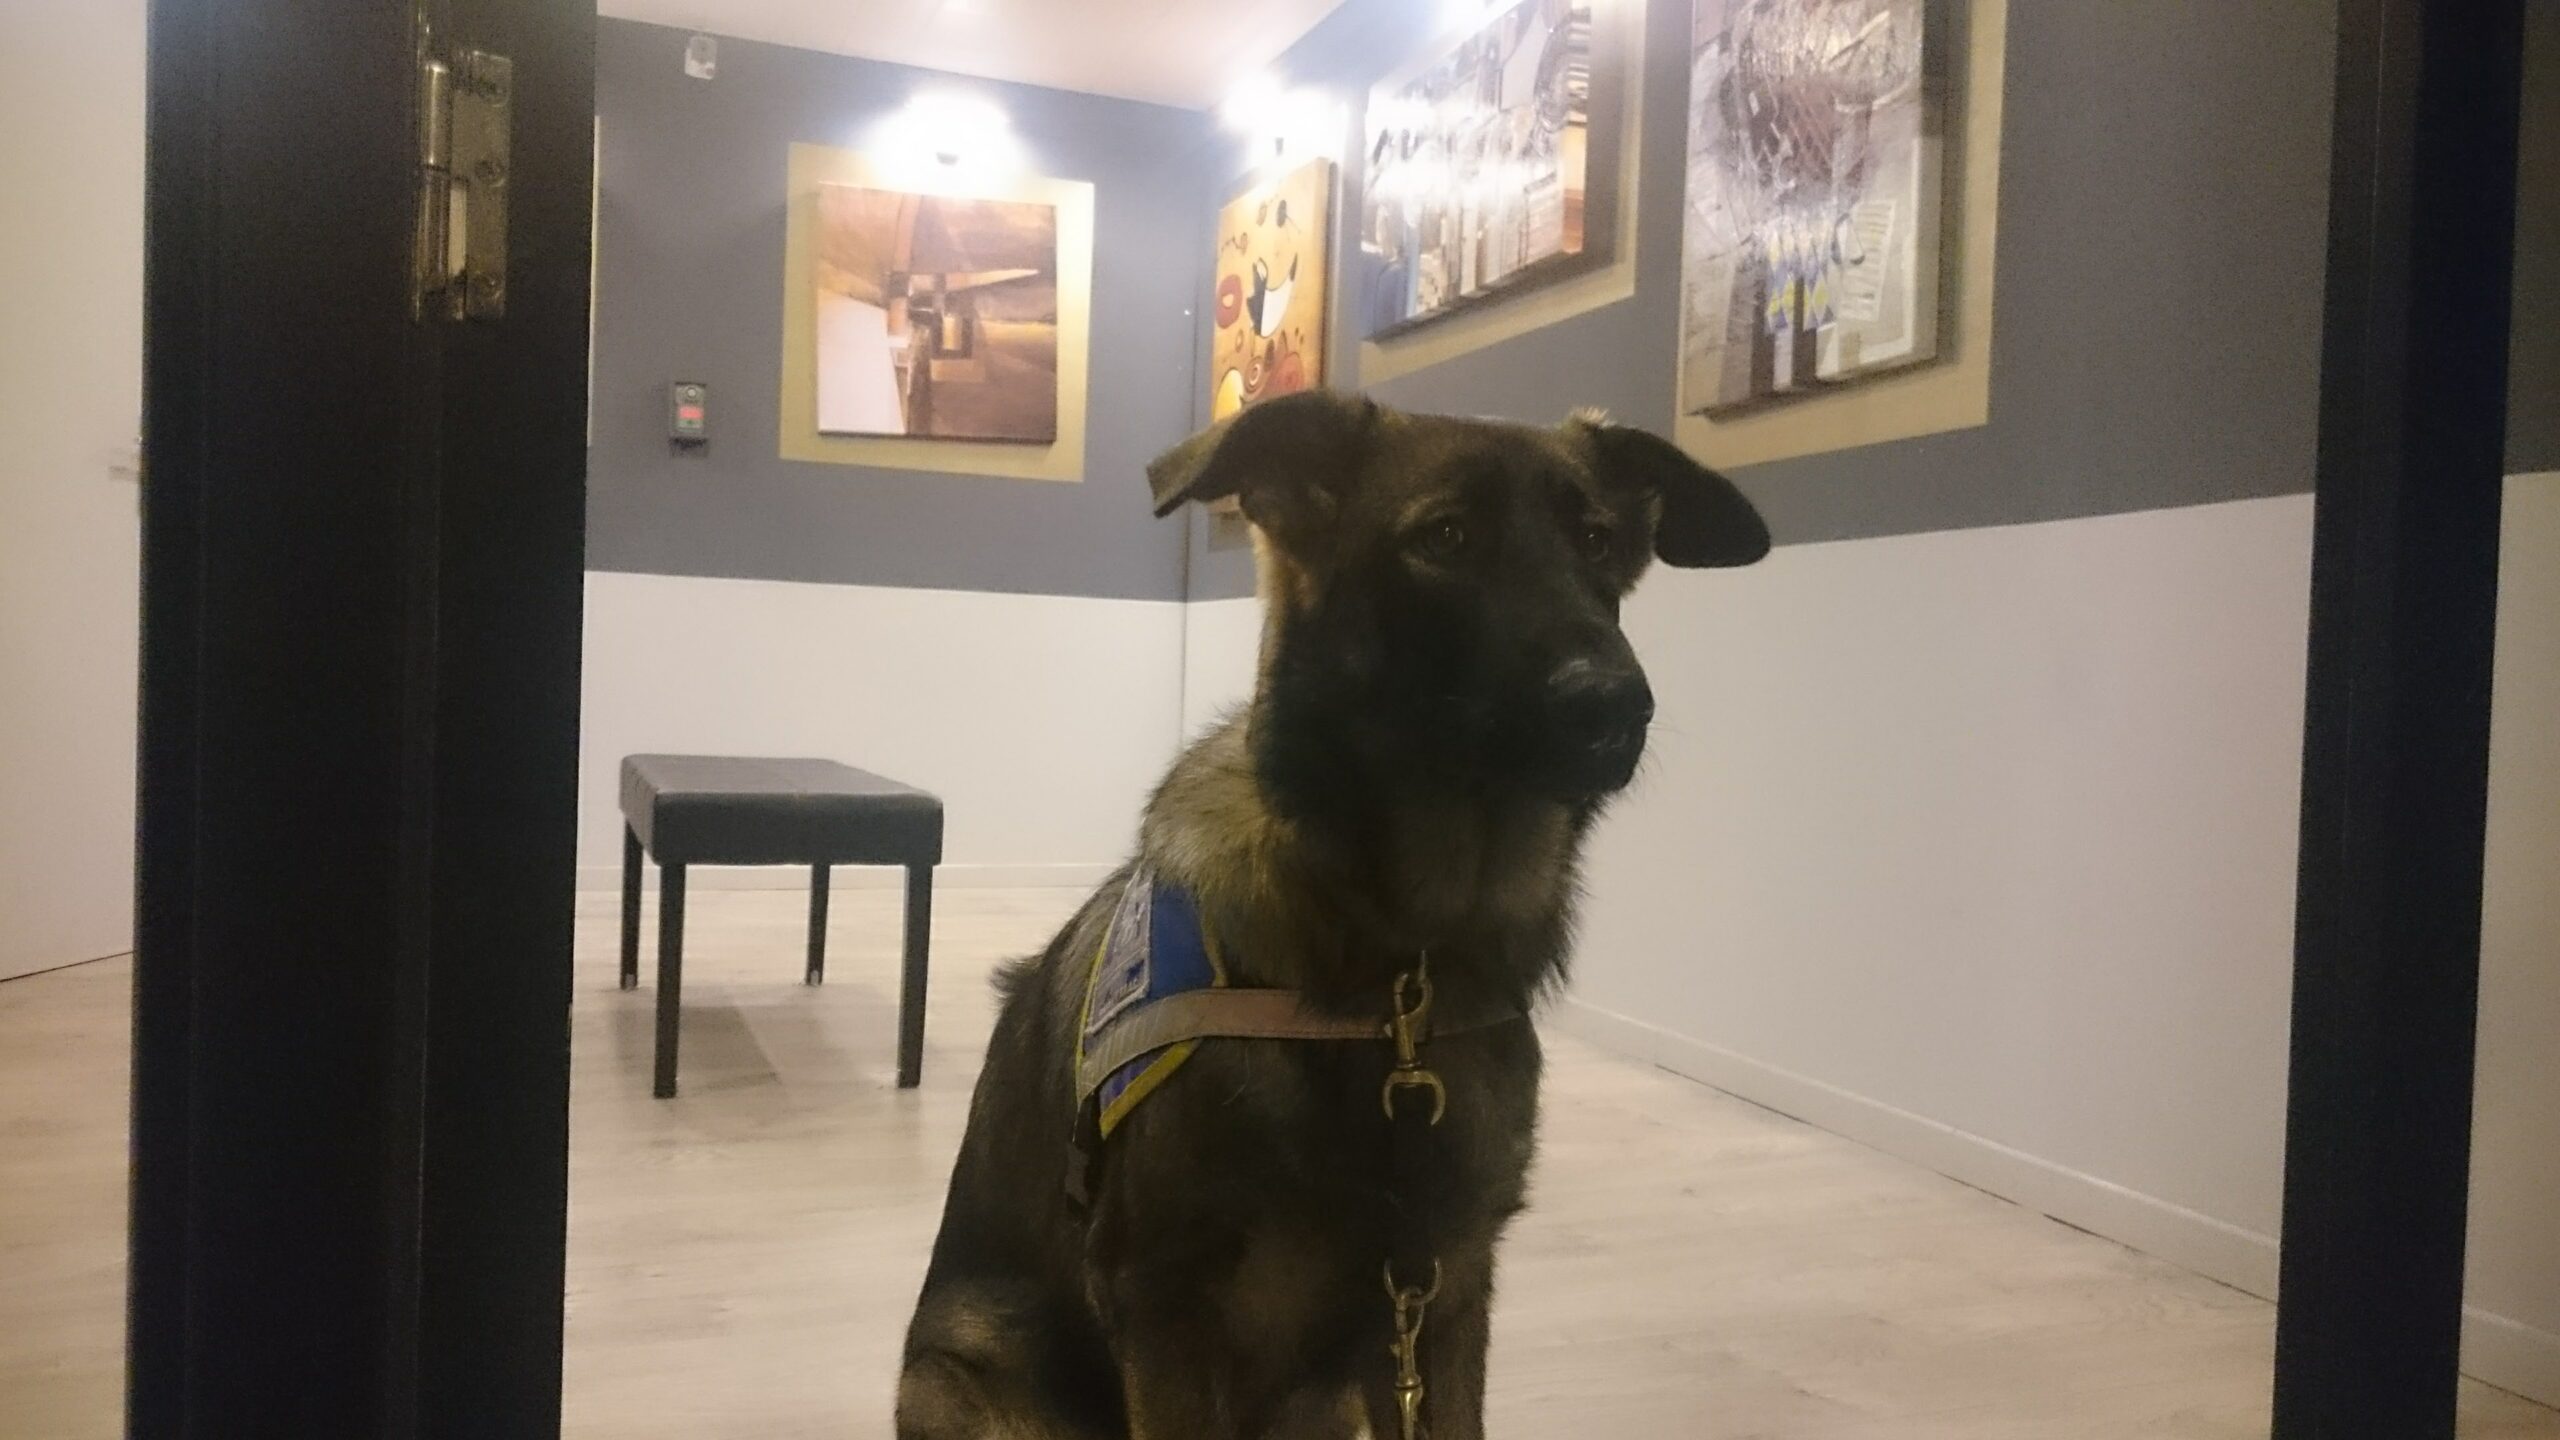 Nox, berger allemand de 7 mois, assis avec son dossard bleu d'élève chien guide dans l'escape game reprenant une salle d'exposition de peintures